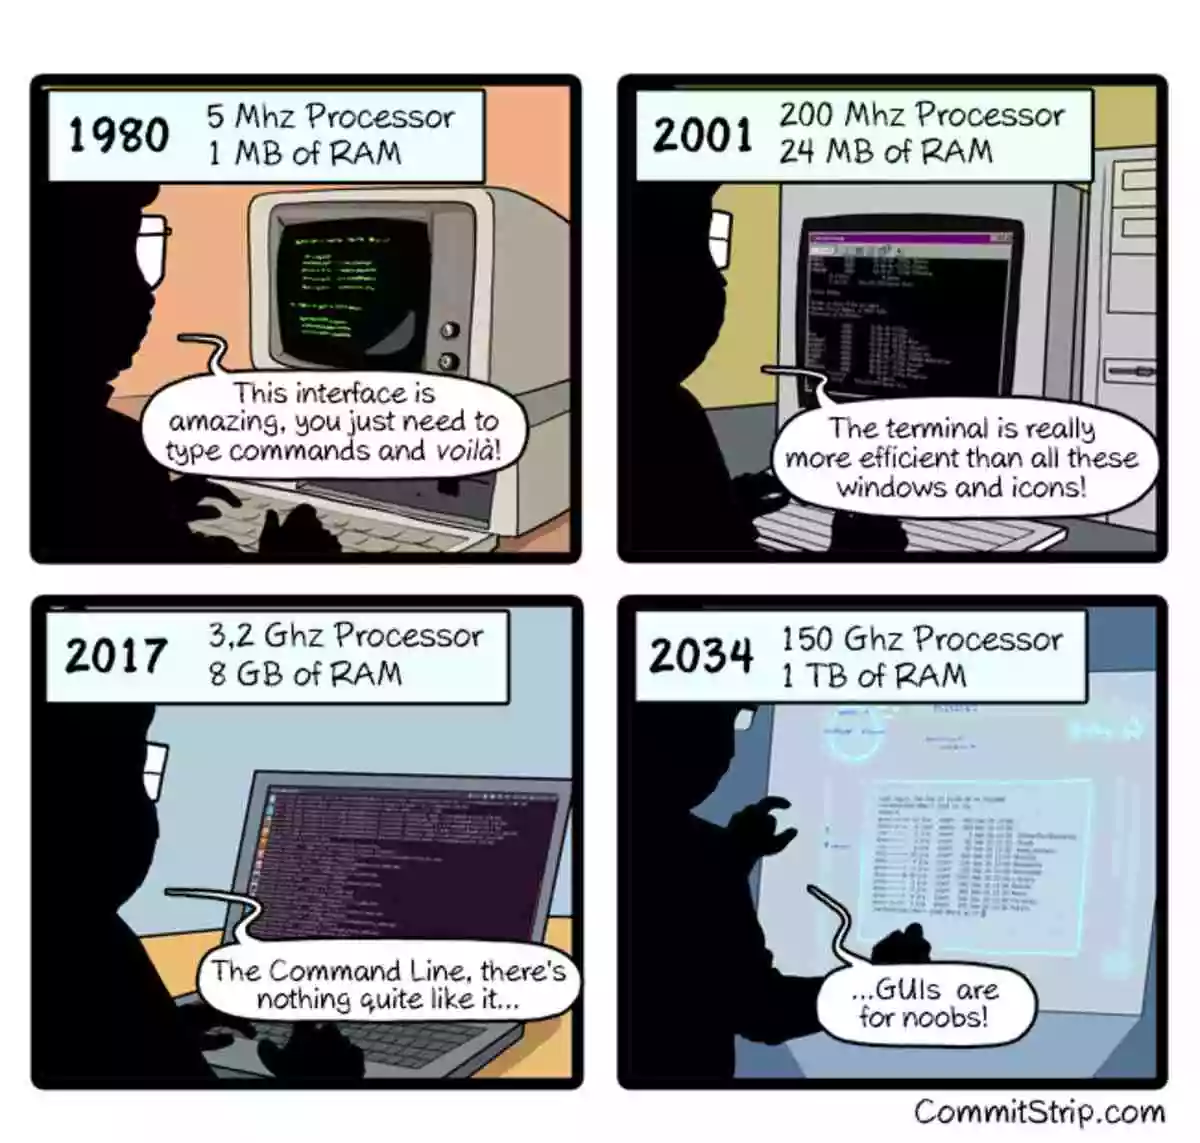 对于Linux用户万年都是终端